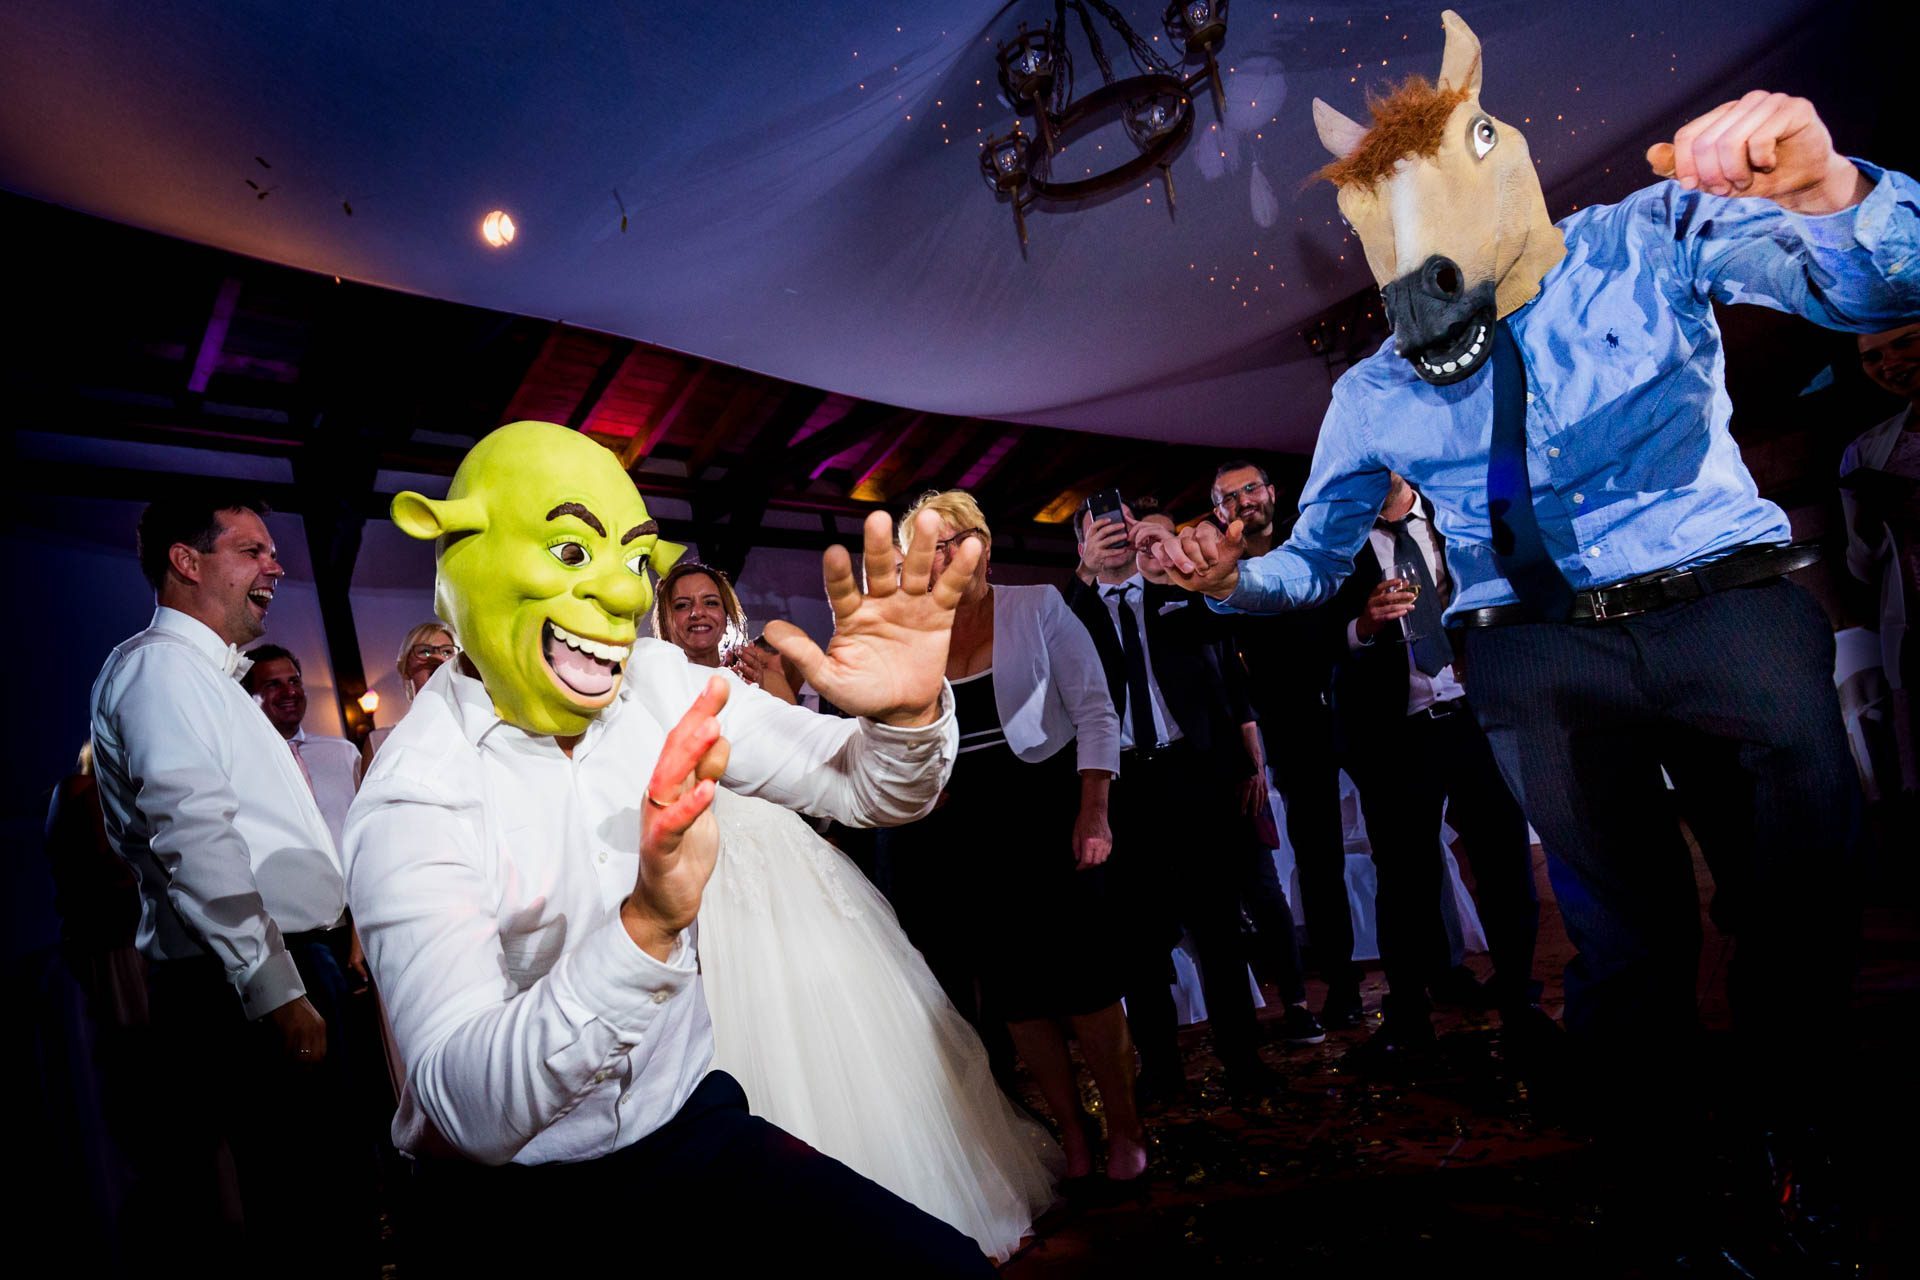 Ausgelassener Tanz auf der Tanzfläche: Dynamische Aufnahmen, die die Energie und Freude der mit Fotobox-Requisiten verkleideten Hochzeitsgesellschaft während des Tanzens einfangen.